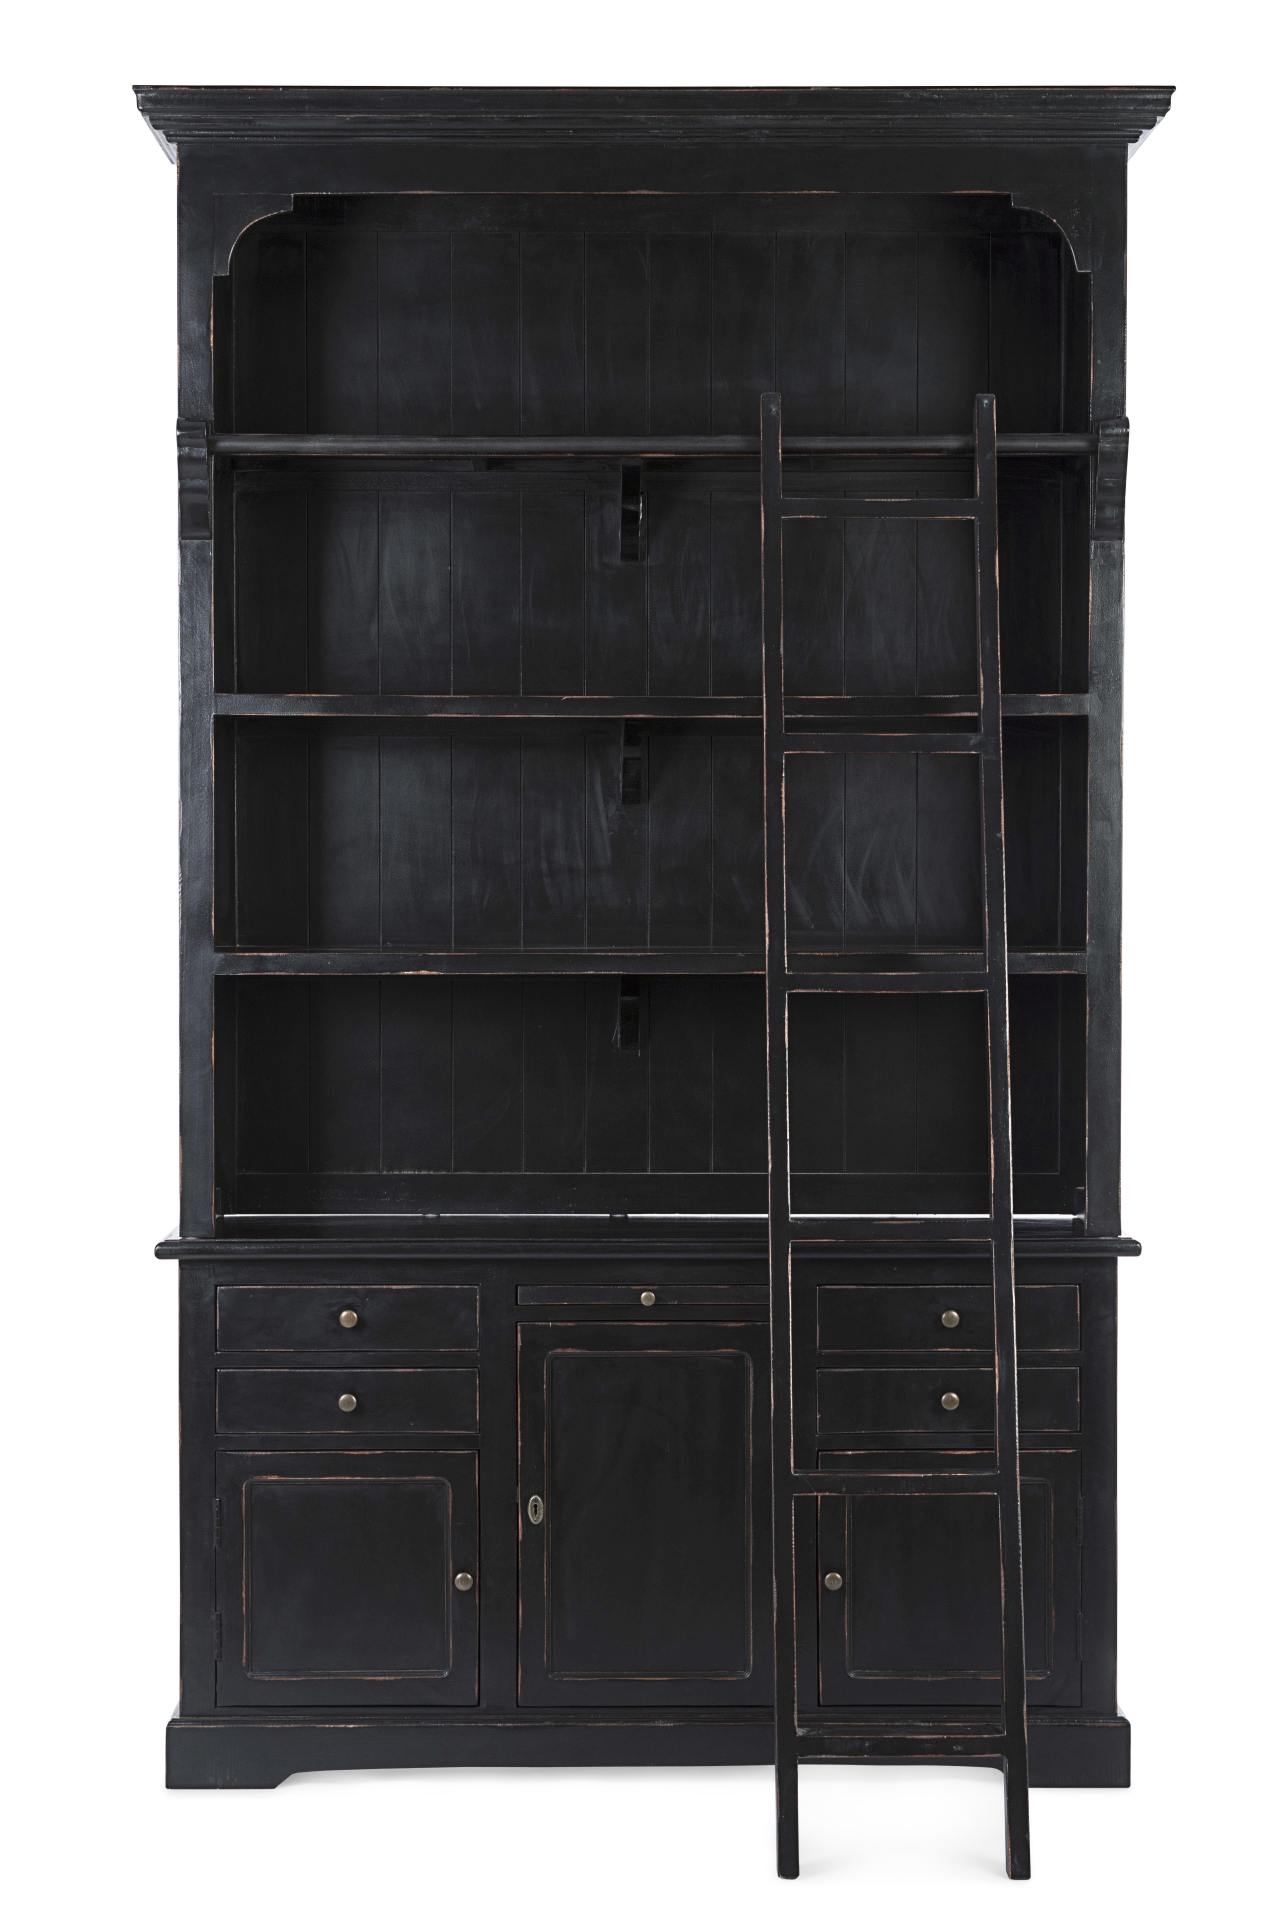 Der Bücherschrank Jefferson überzeugt mit seinem klassischen Design. Gefertigt wurde er aus Mangoholz, welches einen schwarzen Farbton besitzt. Das Gestell ist auch aus Mangoholz. Der Schrank verfügt über drei Türen und vier Schubladen. Die Breite beträgt